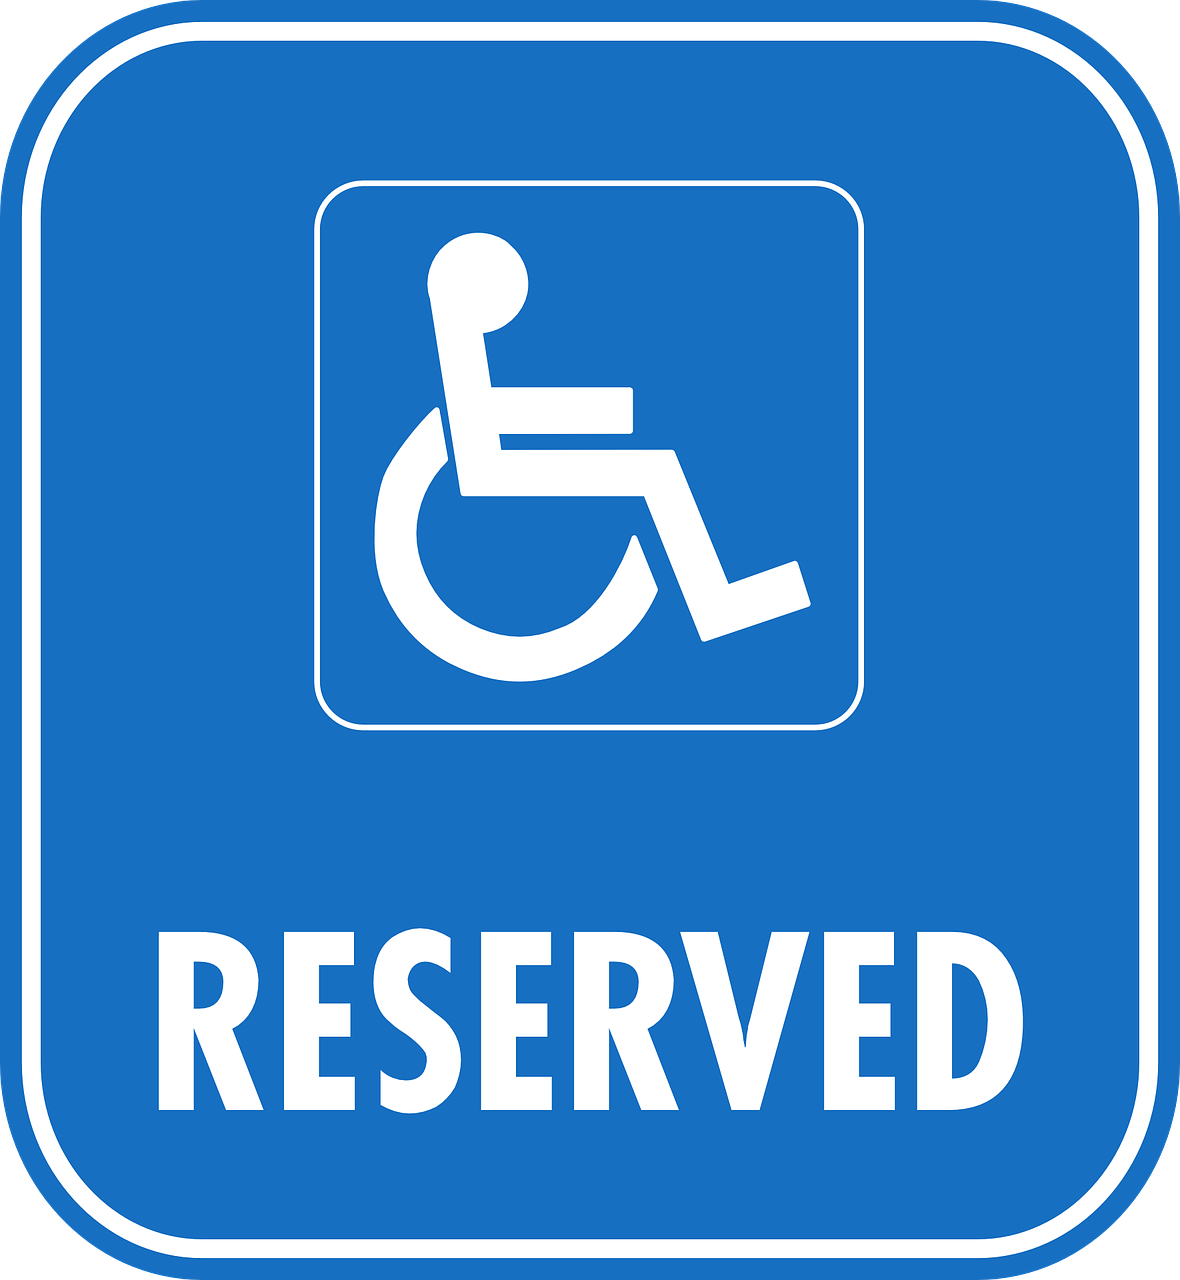 Mary Klaasse instellingen gehandicaptenzorg verstandelijk gehandicapten kliniek review